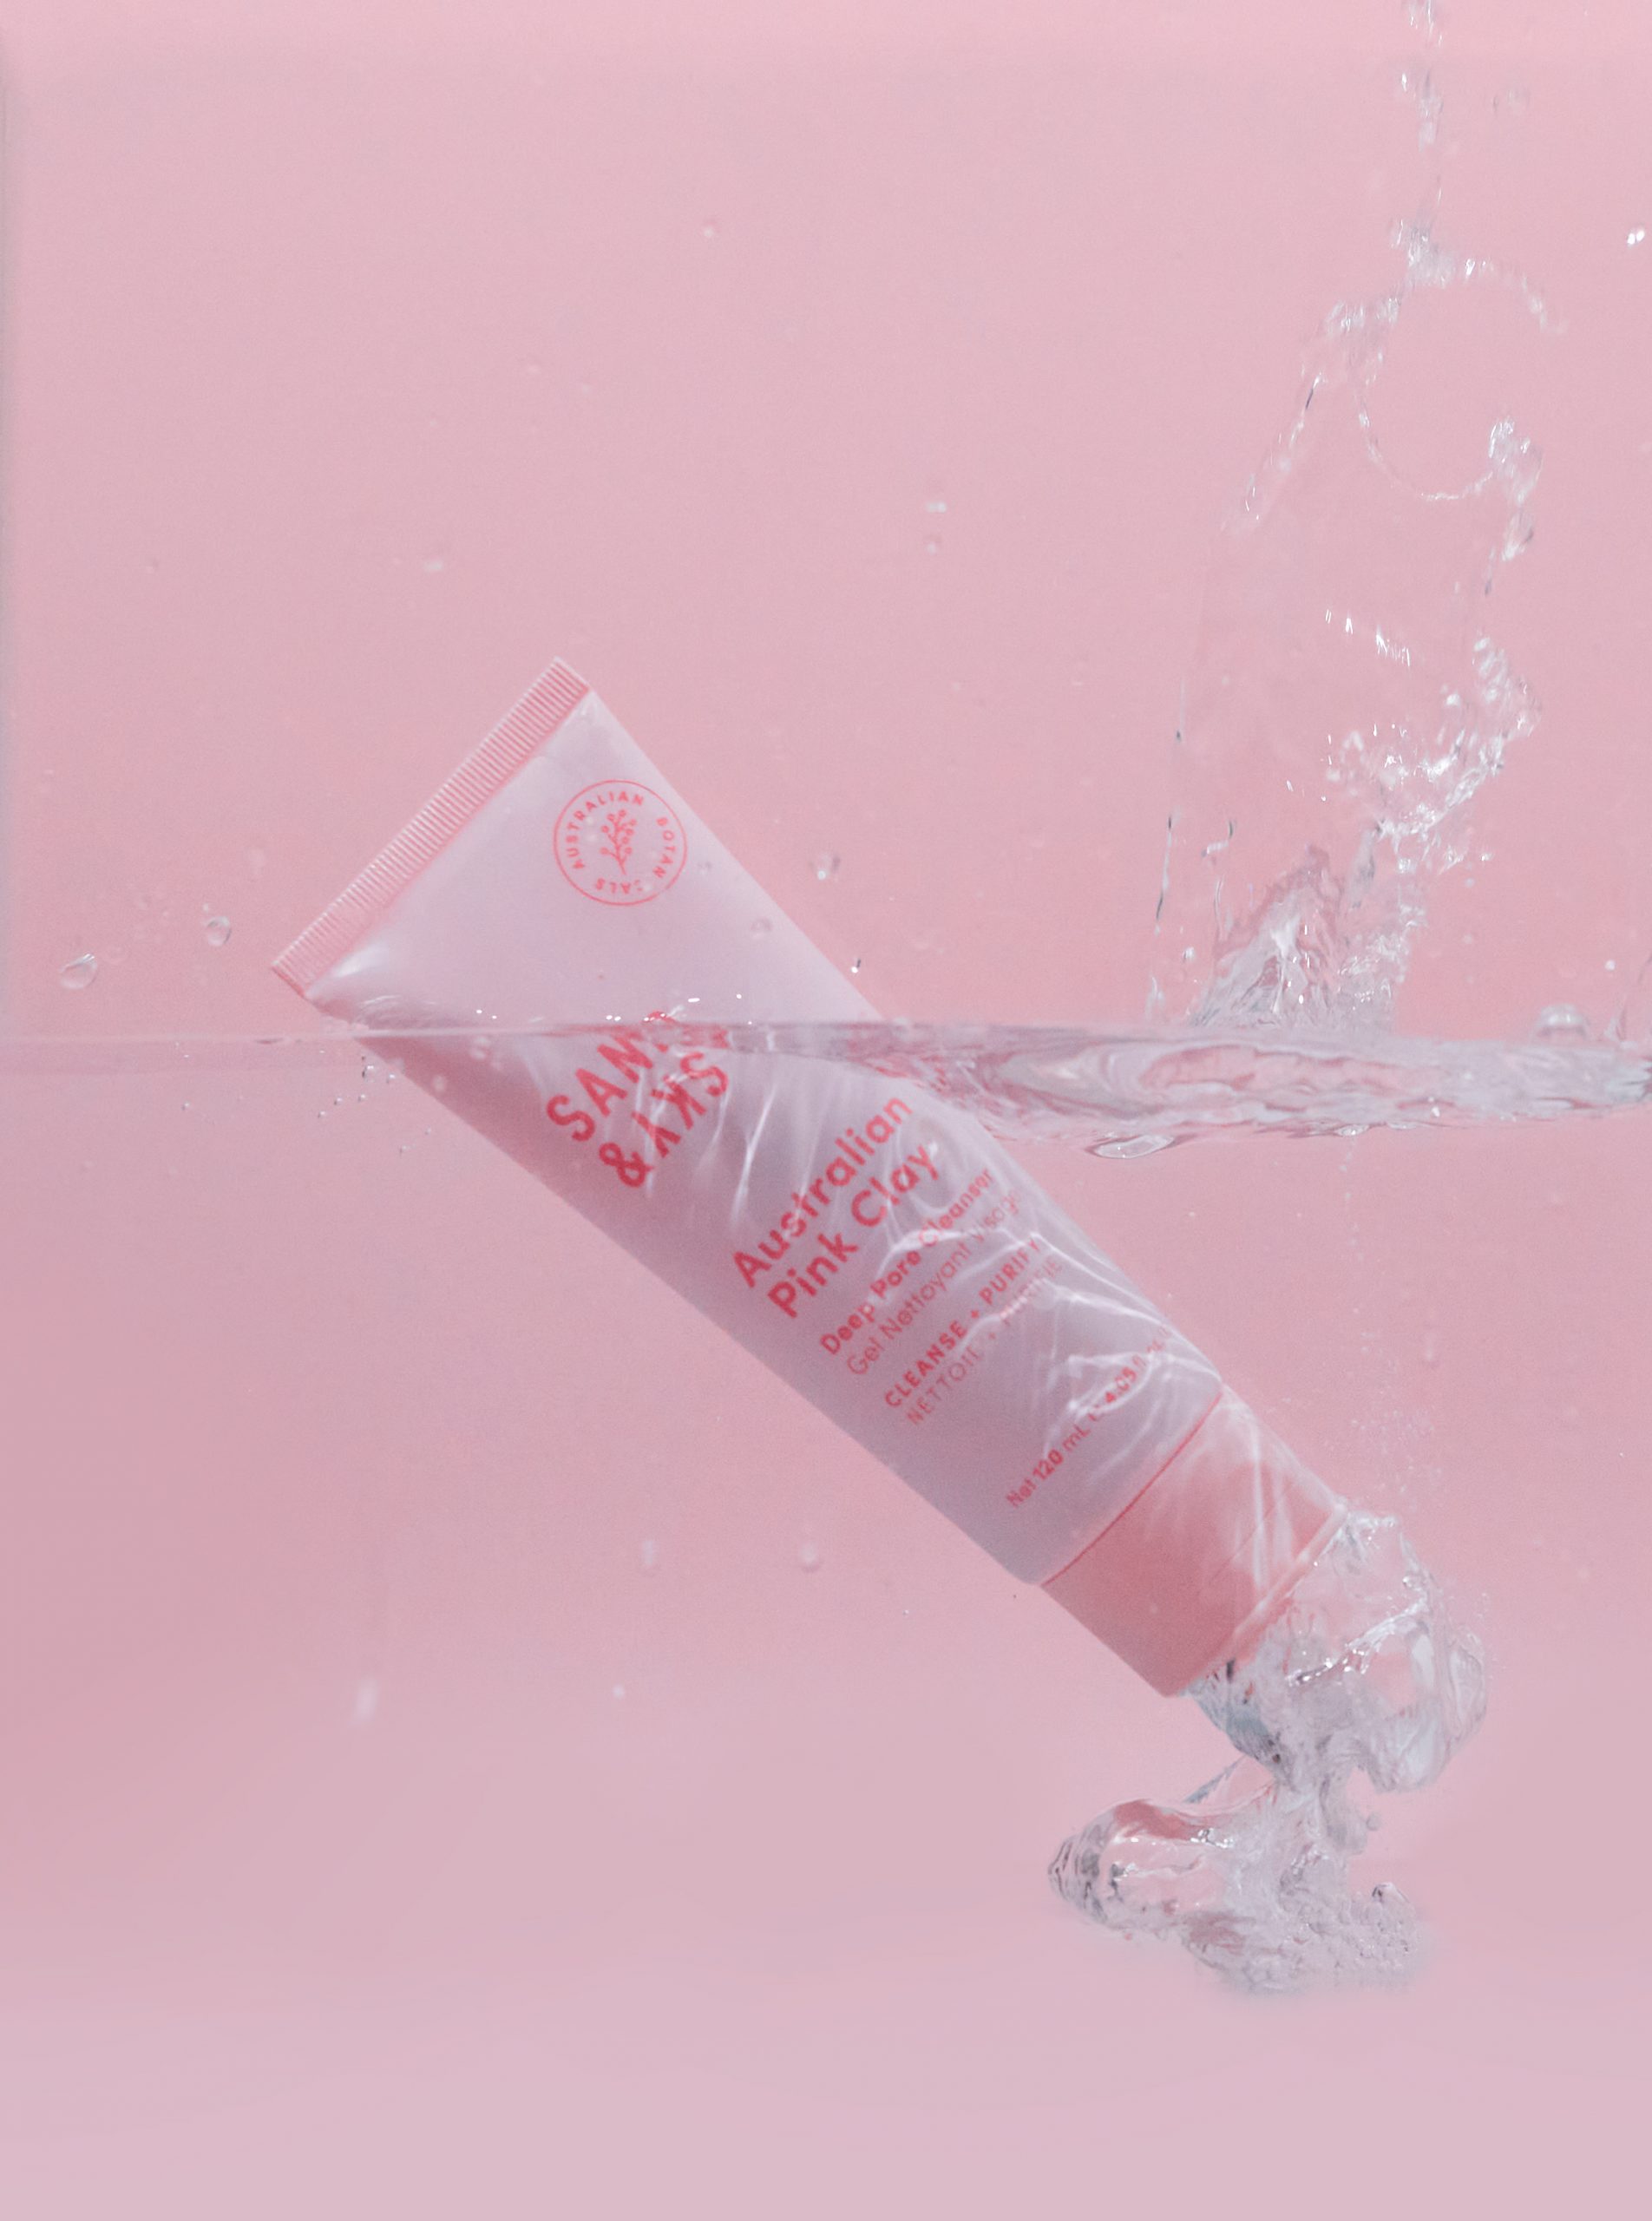 photographe publicitaire watersplash grenade sand&sky éclaboussure produit rose